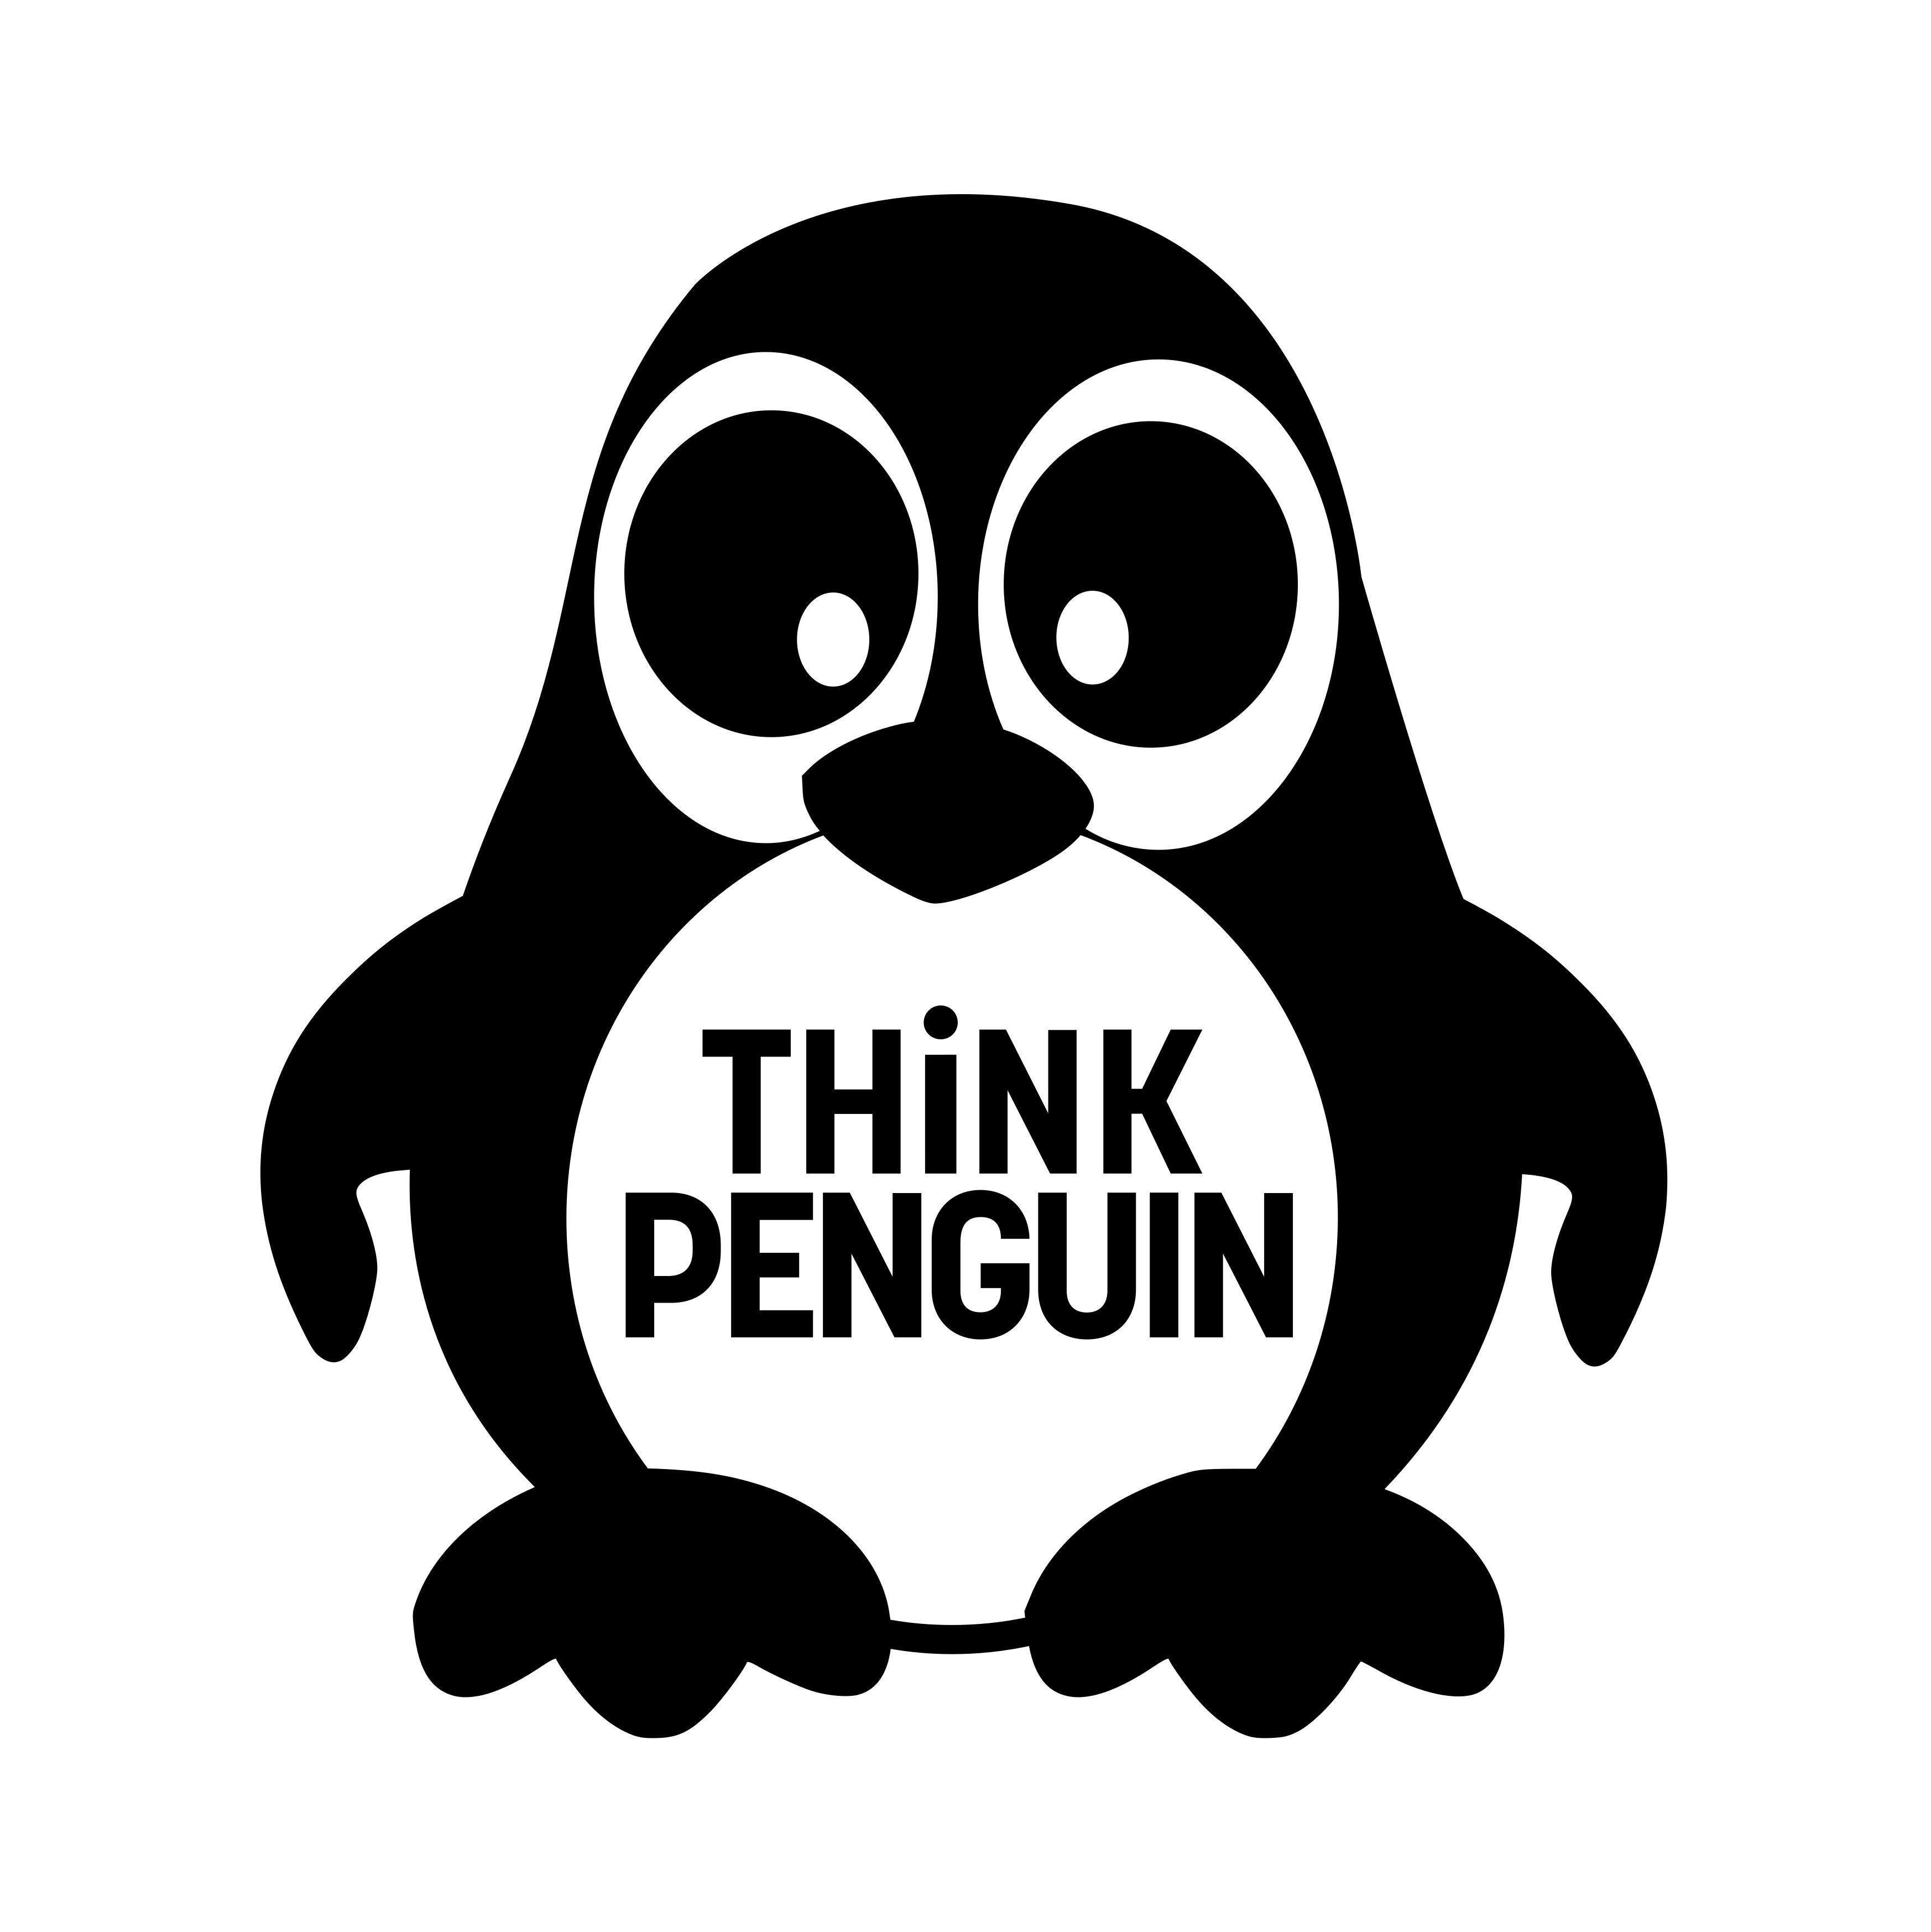 ThinkPenguin logo.